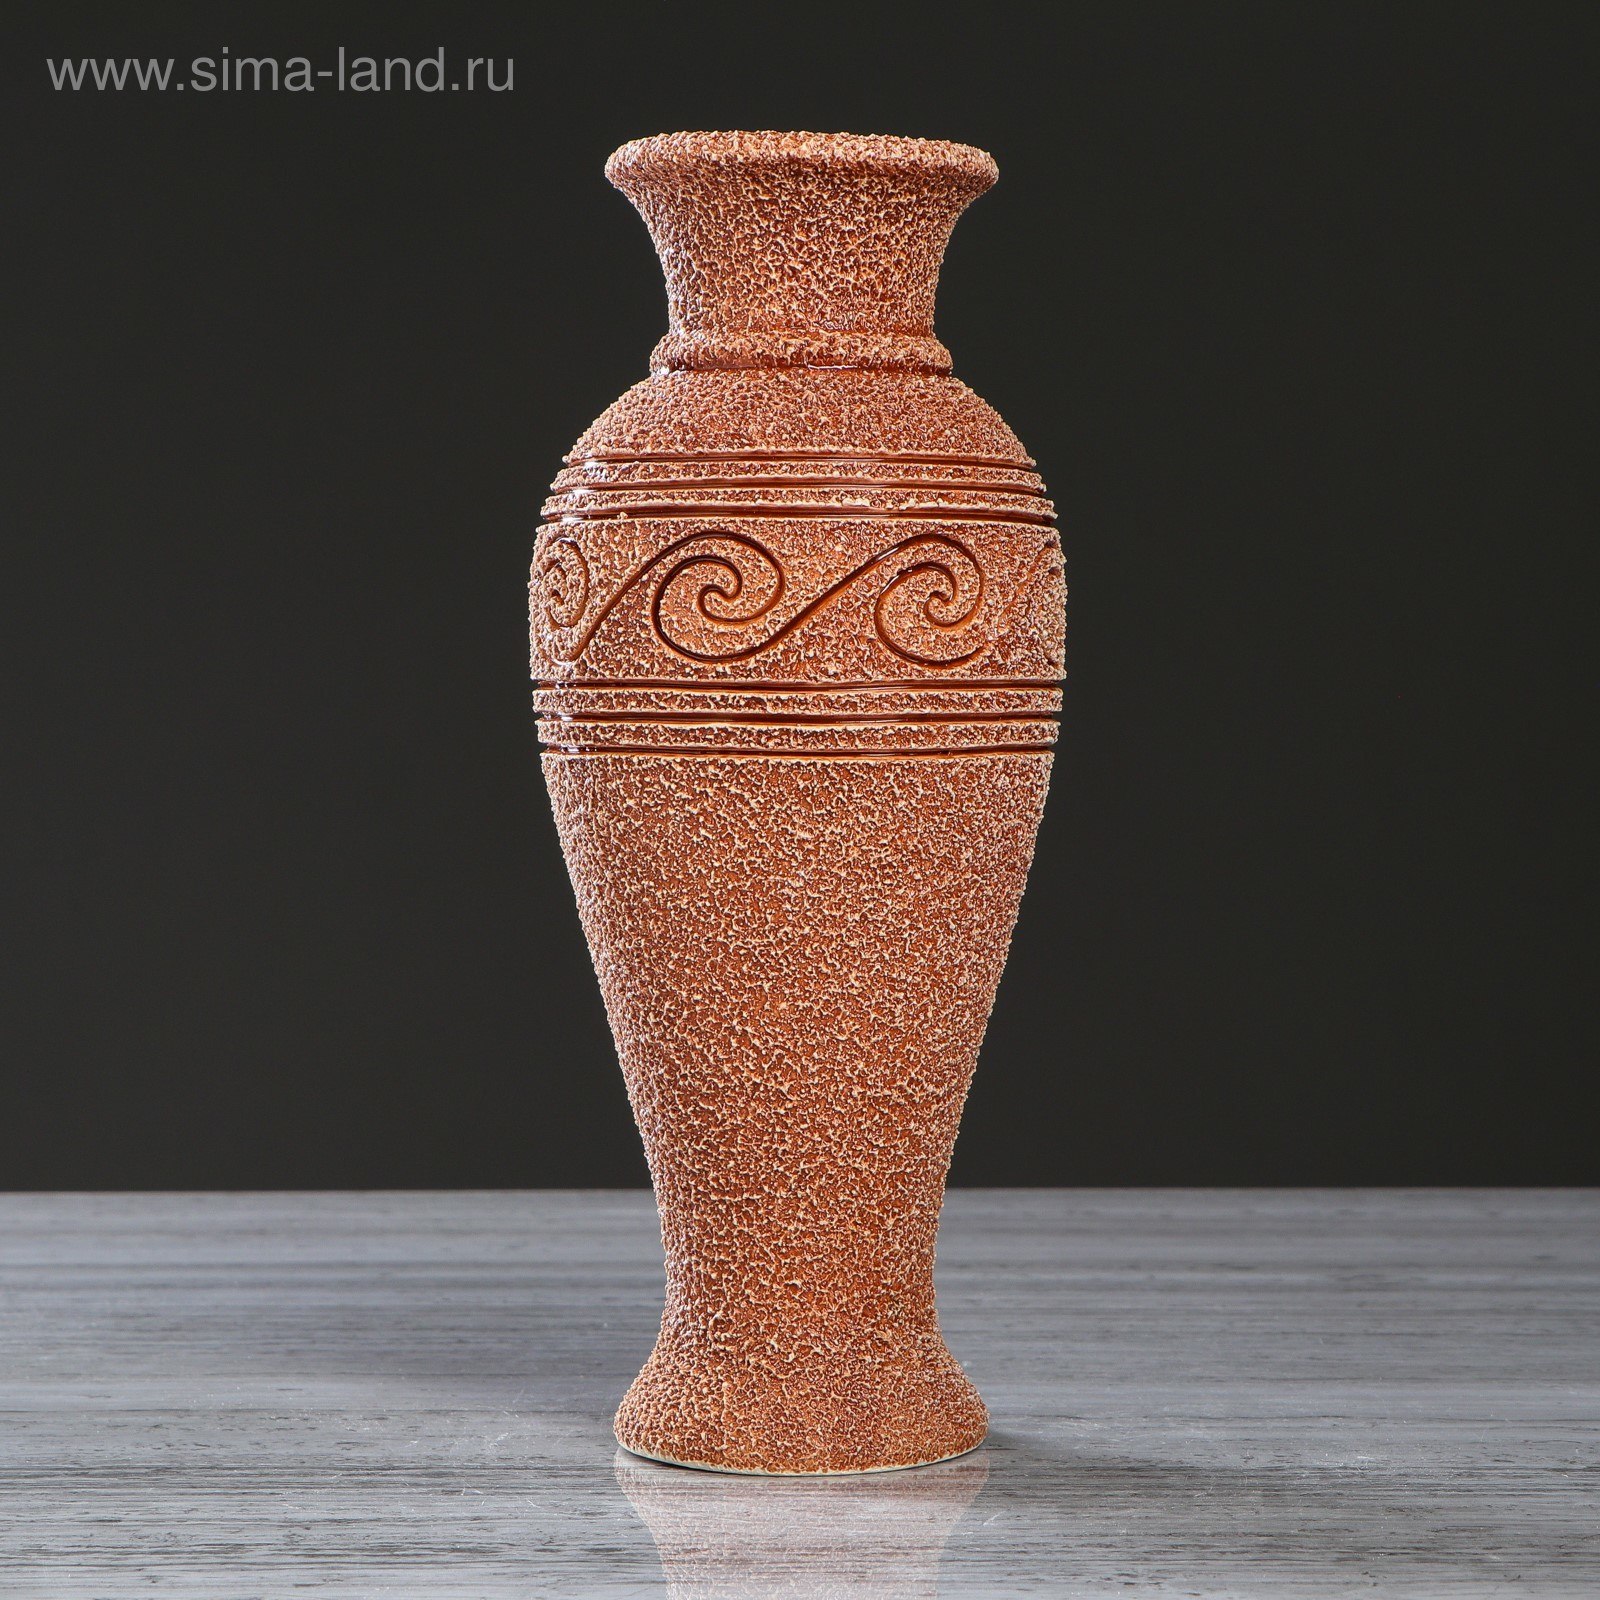 Стоит ваза в ваз 20. Ваза 20см конус ум0134 керамика. Интерьерные вазы. Напольные вазы амфорного типа. Вазочка из керамики.